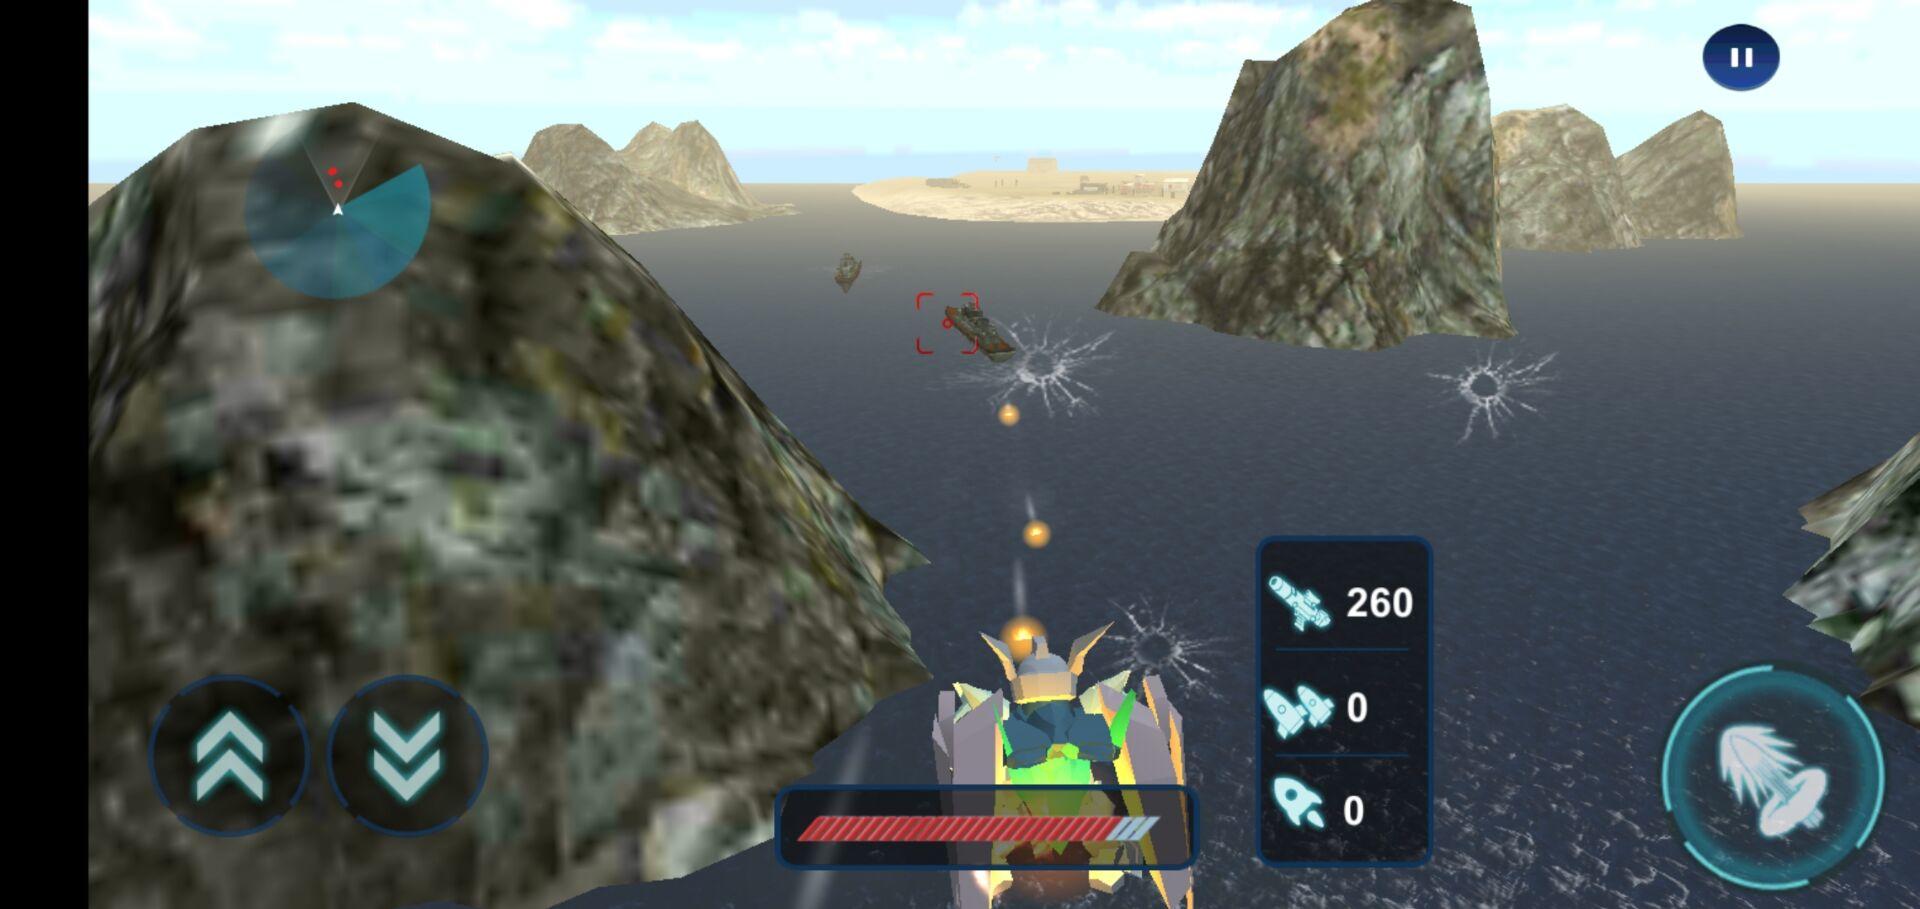 Screenshot 1 of สงครามหุ่นยนต์โจมตีทางอากาศ 1.0